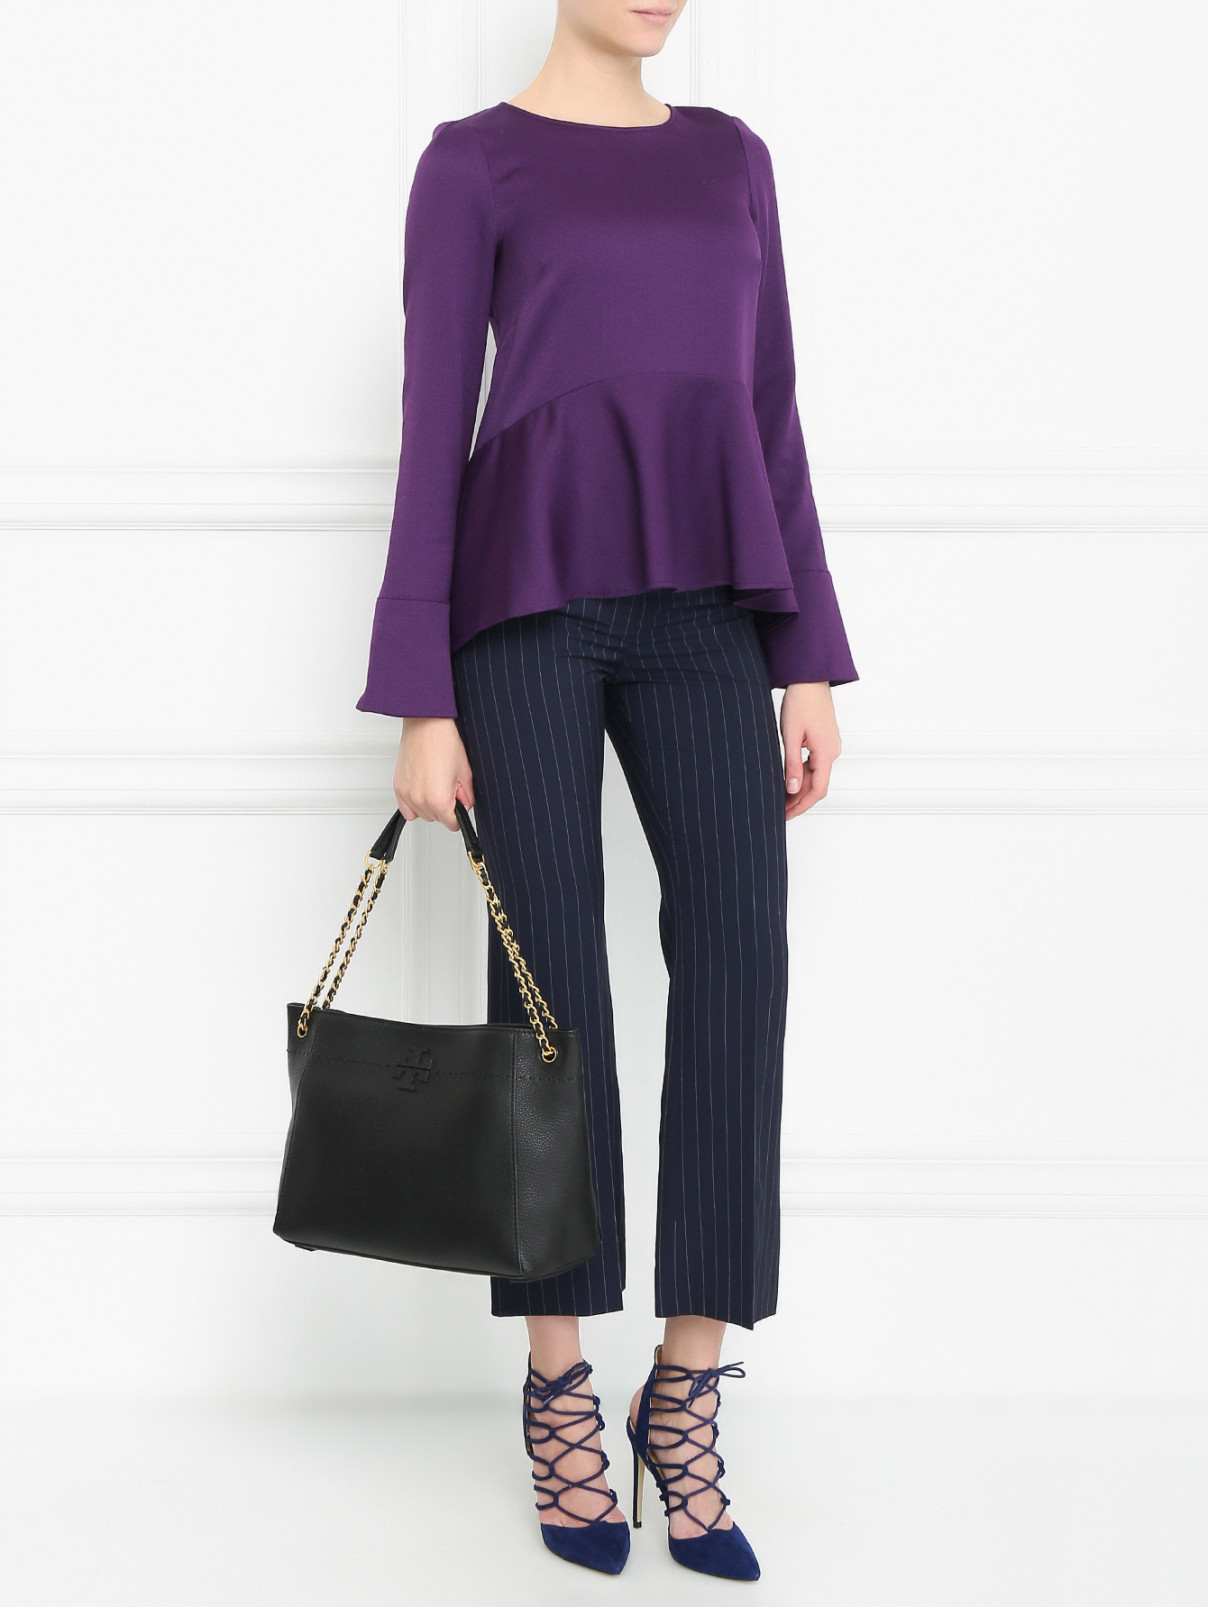 Блуза с баской Max&Co  –  Модель Общий вид  – Цвет:  Фиолетовый